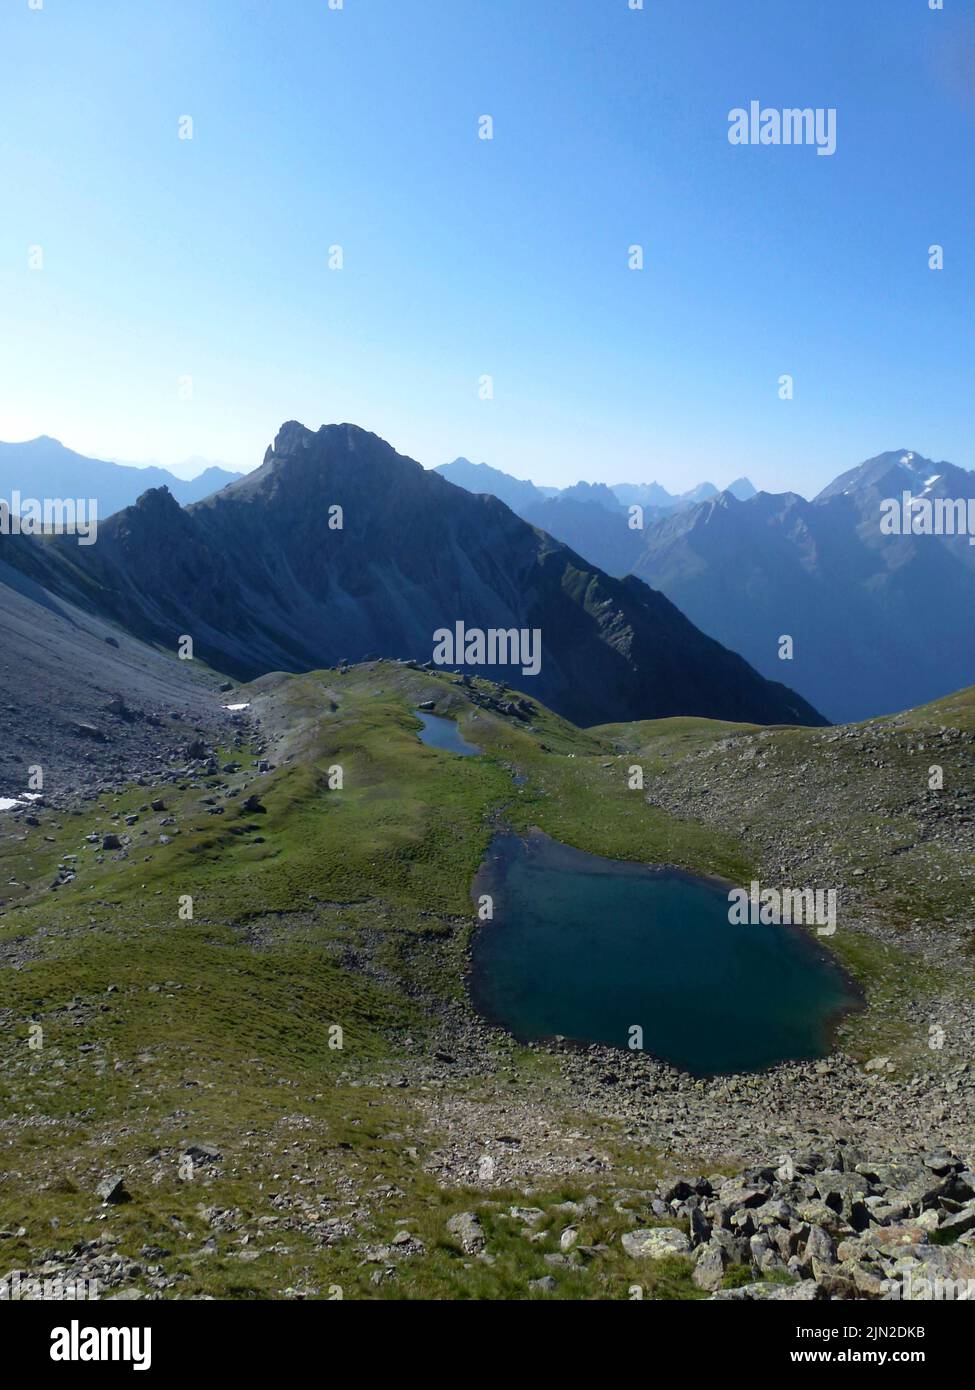 Stubai high-altitude hiking trail, lap 2 in Tyrol, Austria Stock Photo